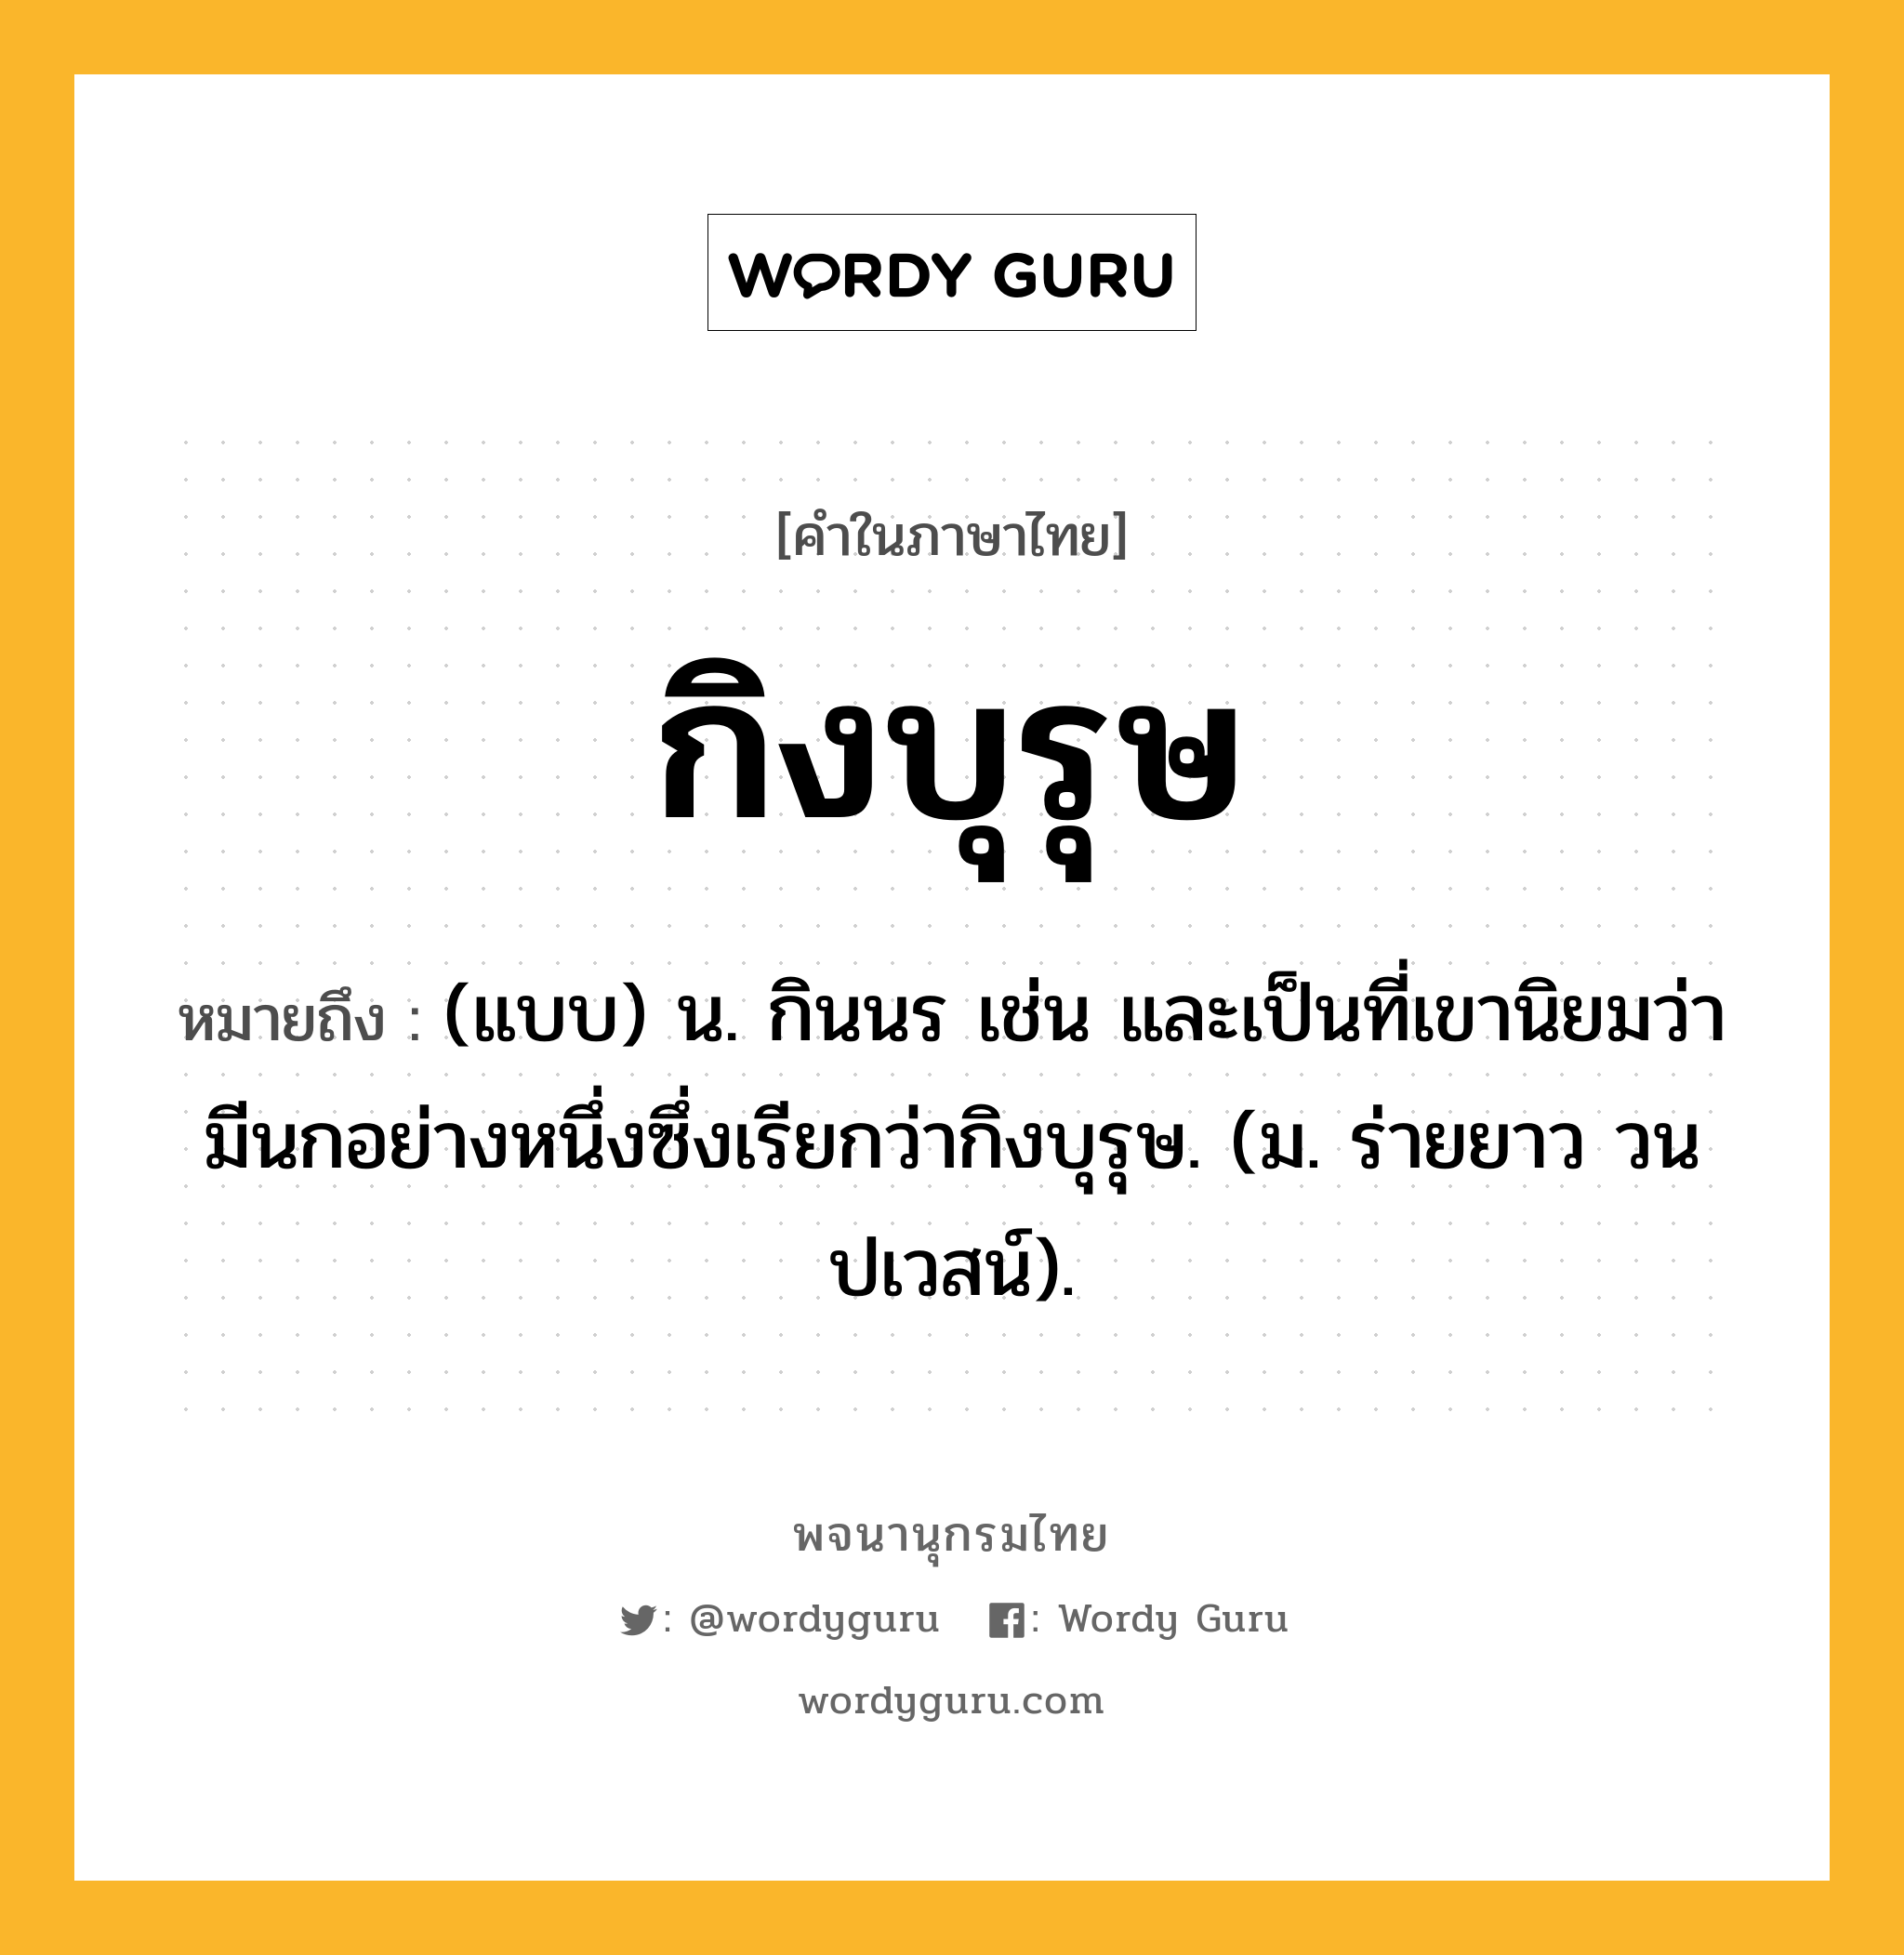 กิงบุรุษ หมายถึงอะไร?, คำในภาษาไทย กิงบุรุษ หมายถึง (แบบ) น. กินนร เช่น และเป็นที่เขานิยมว่ามีนกอย่างหนึ่งซึ่งเรียกว่ากิงบุรุษ. (ม. ร่ายยาว วนปเวสน์).